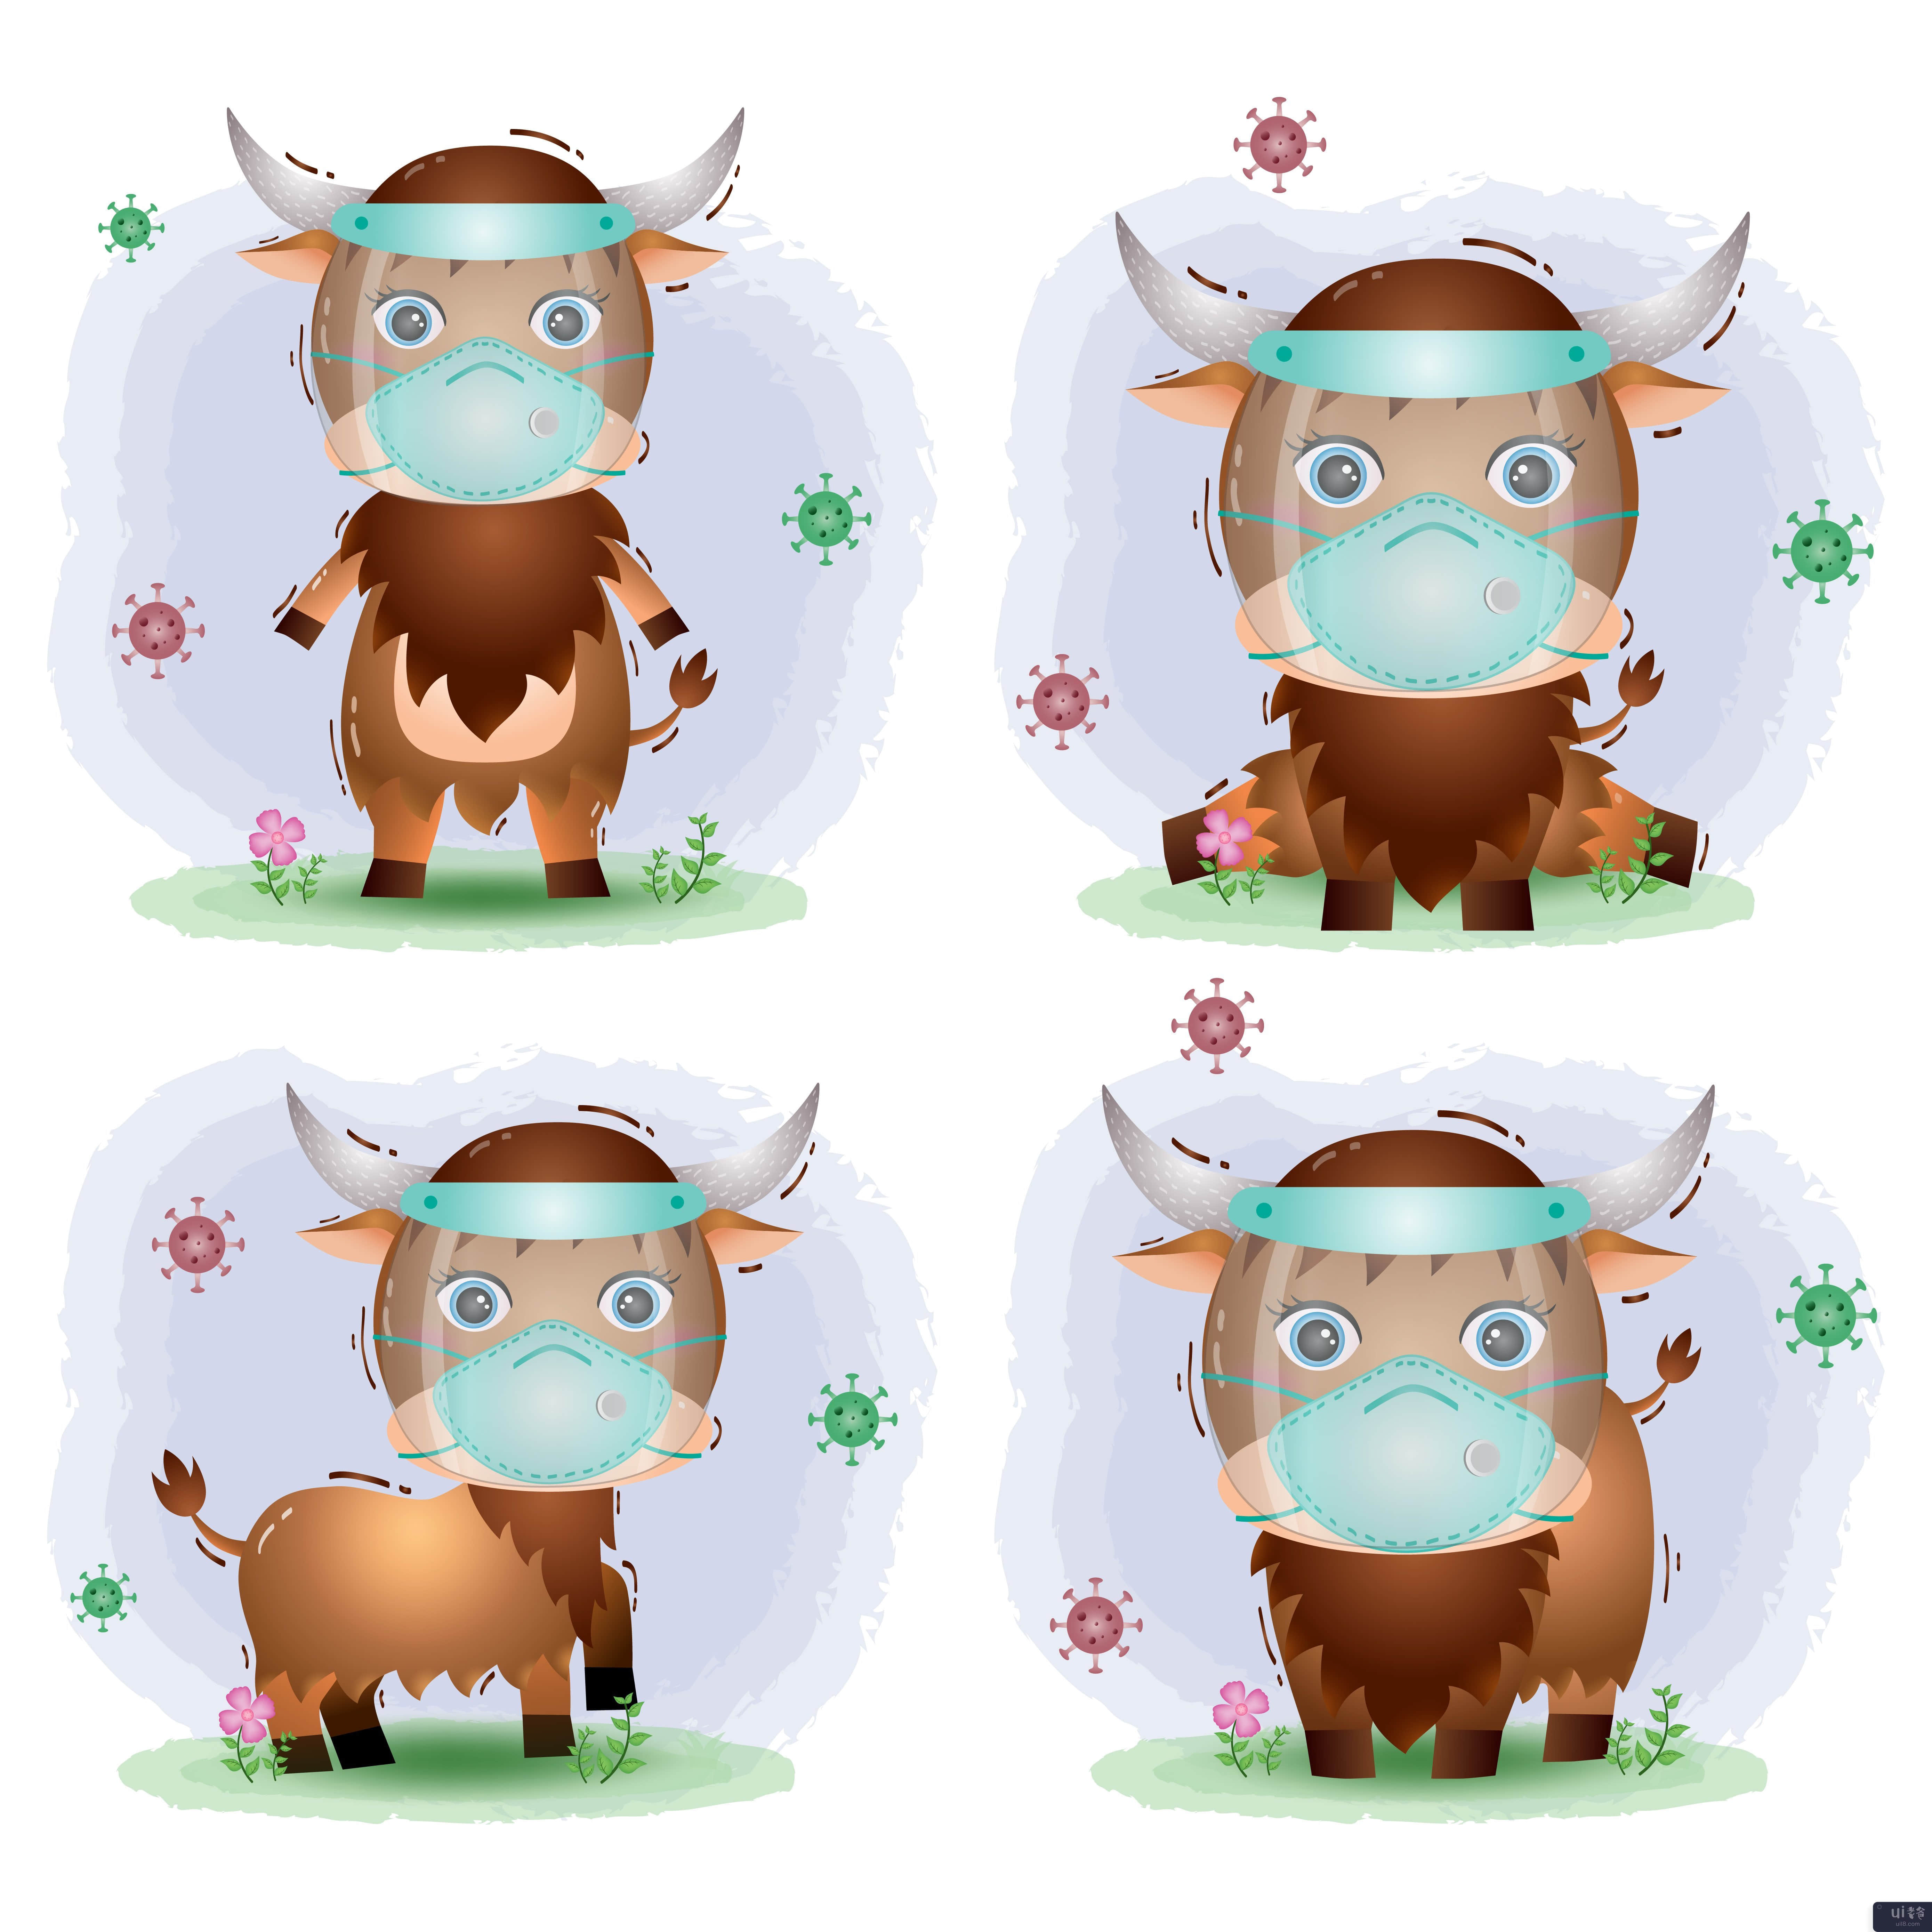 使用面罩和面具系列的可爱水牛(cute buffalo using face shield and mask collection)插图2